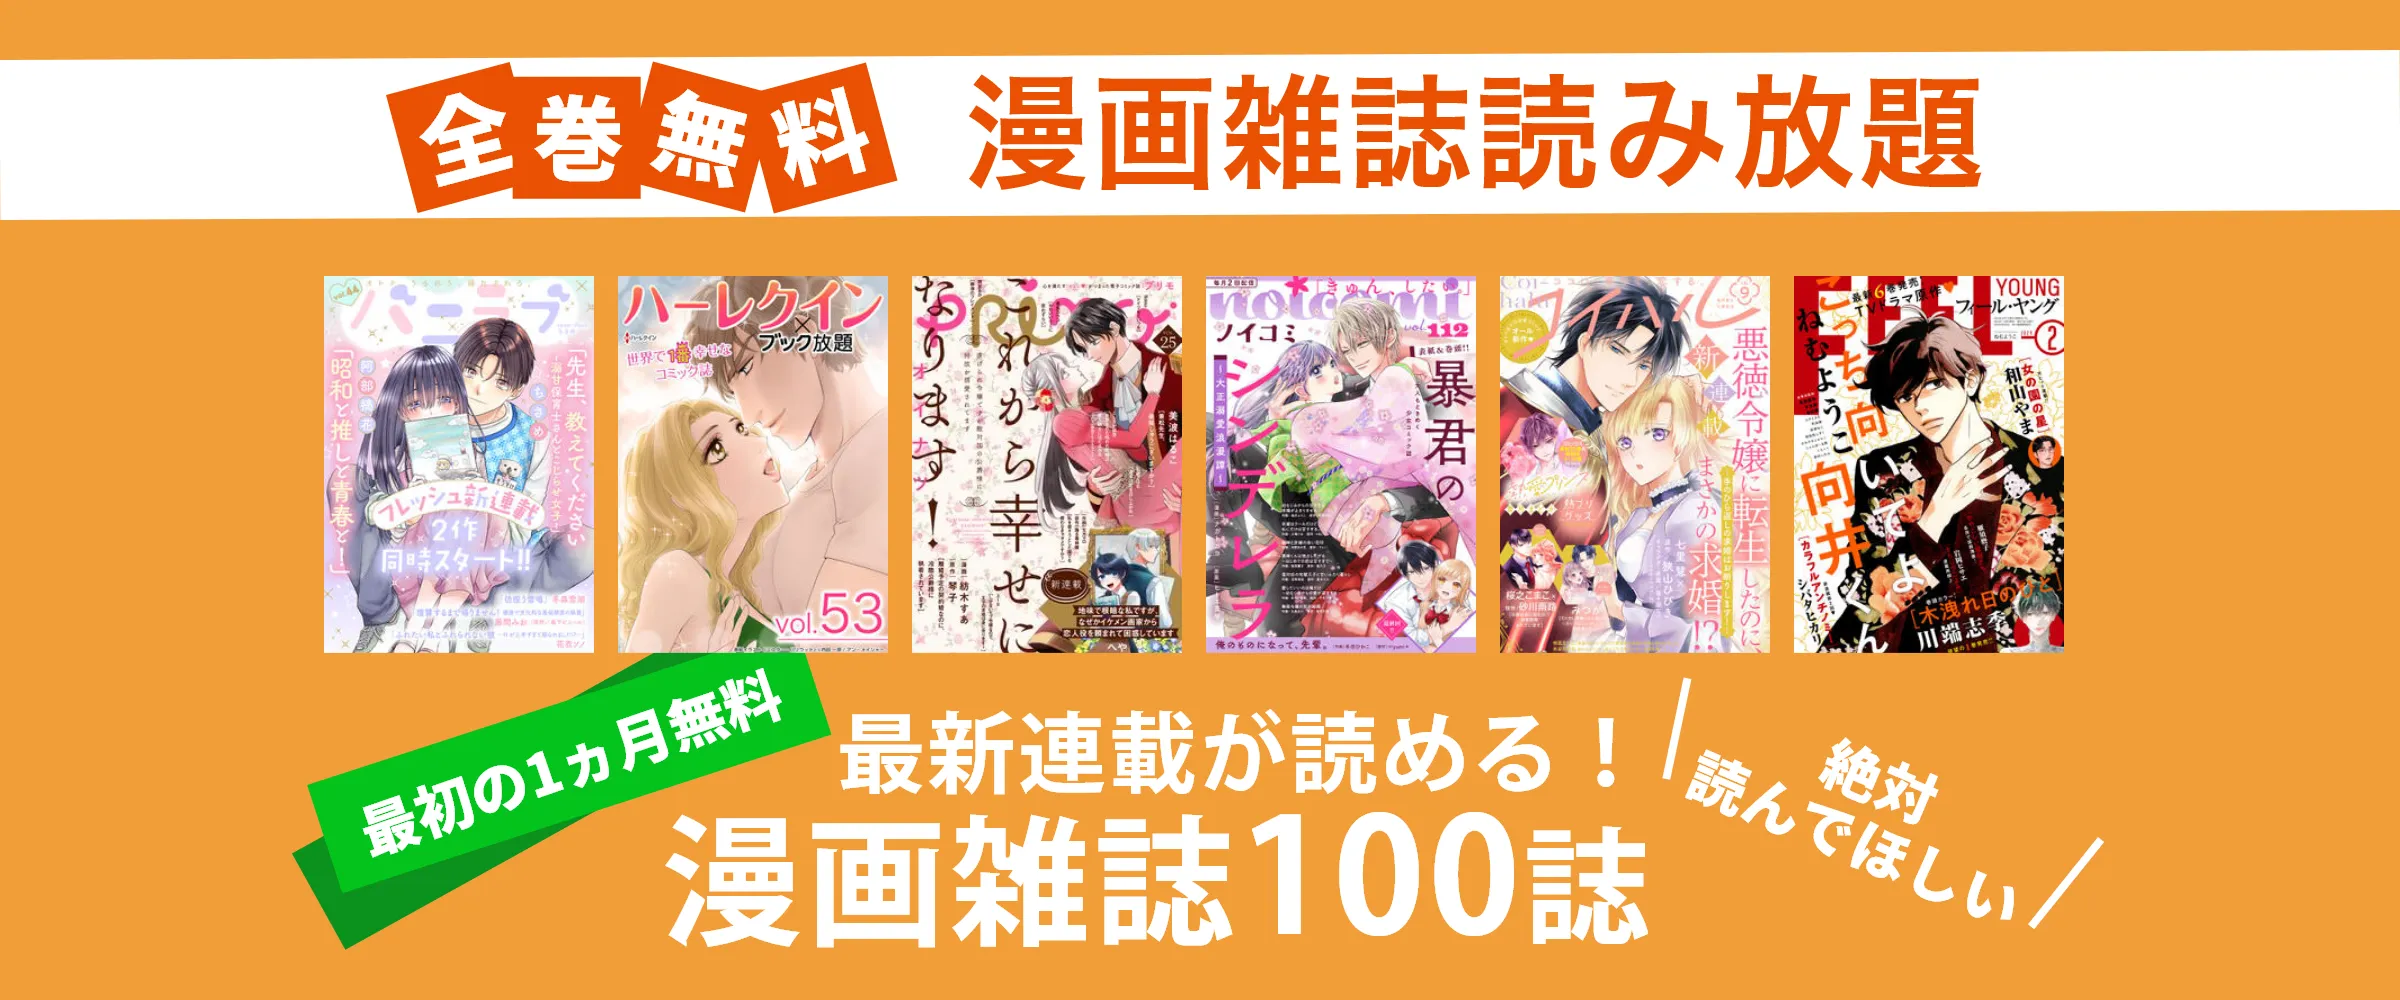 たった550円でnoicomi、FEELYOUNG、コミックベリーズなど漫画雑誌100誌以上読み放題。最初の1ヵ月無料。